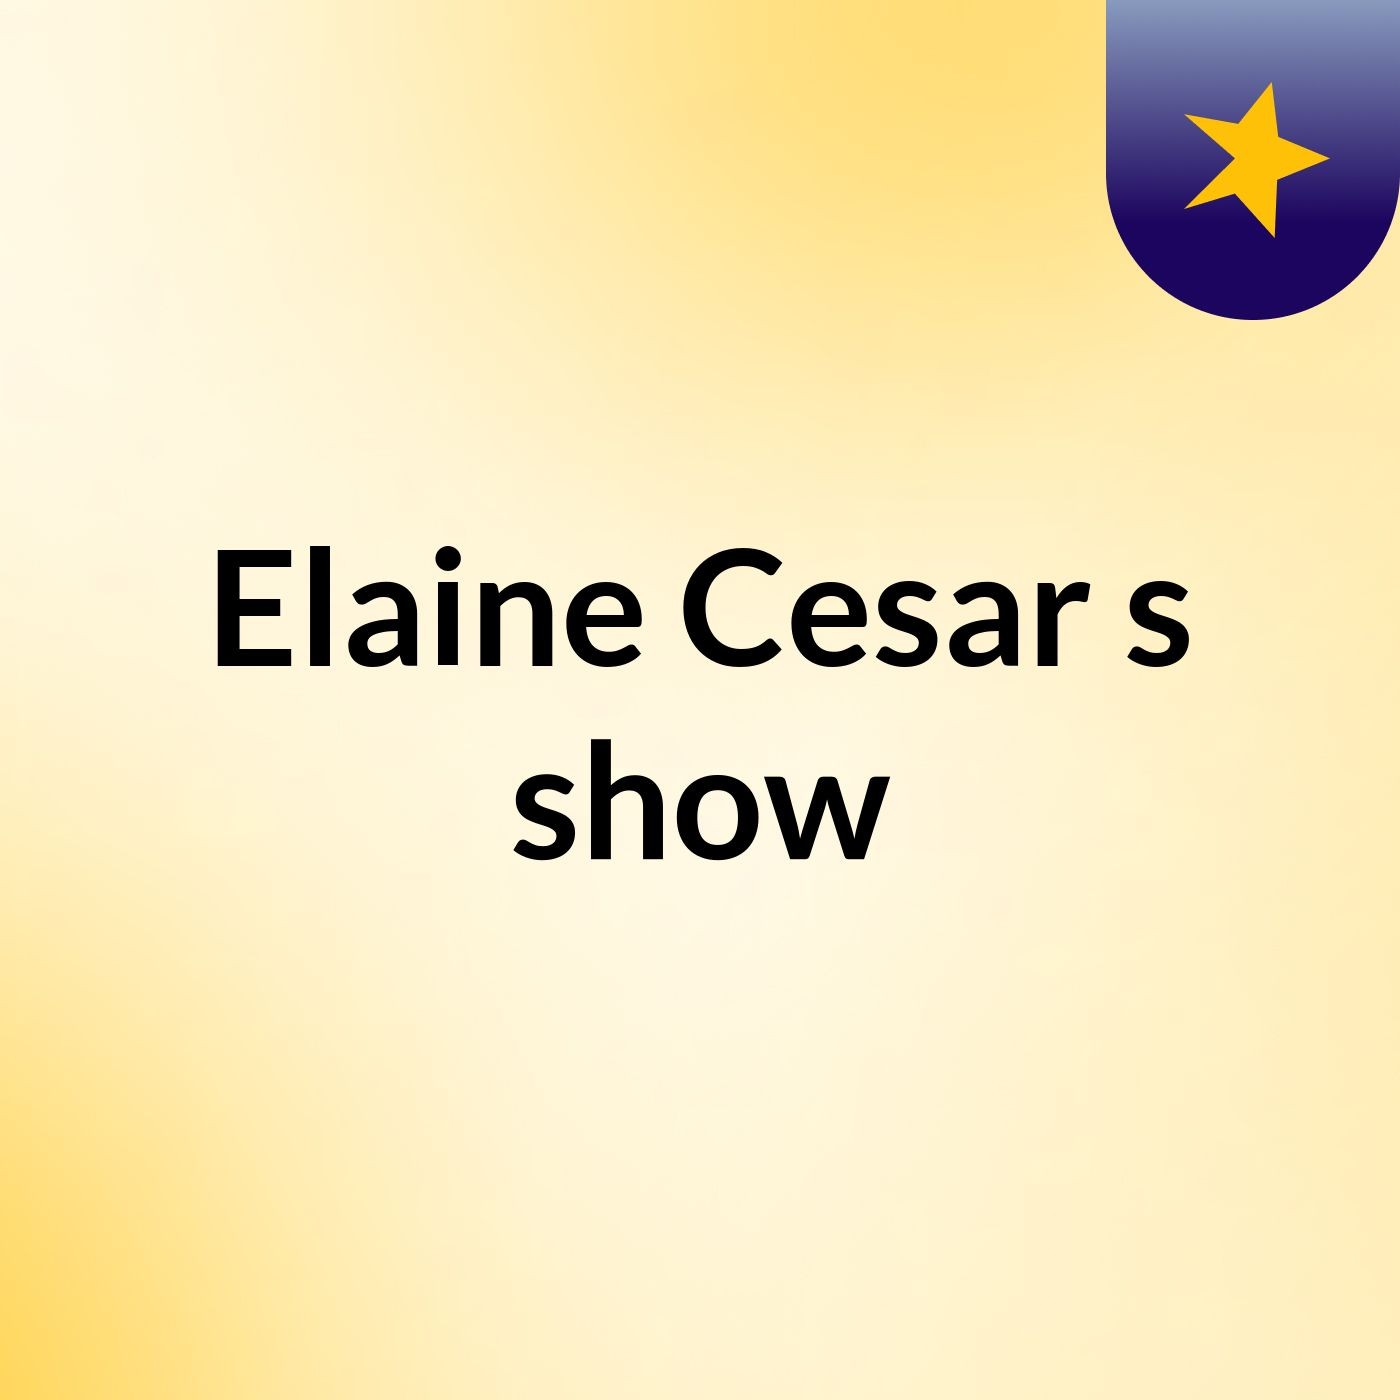 Elaine Cesar's show